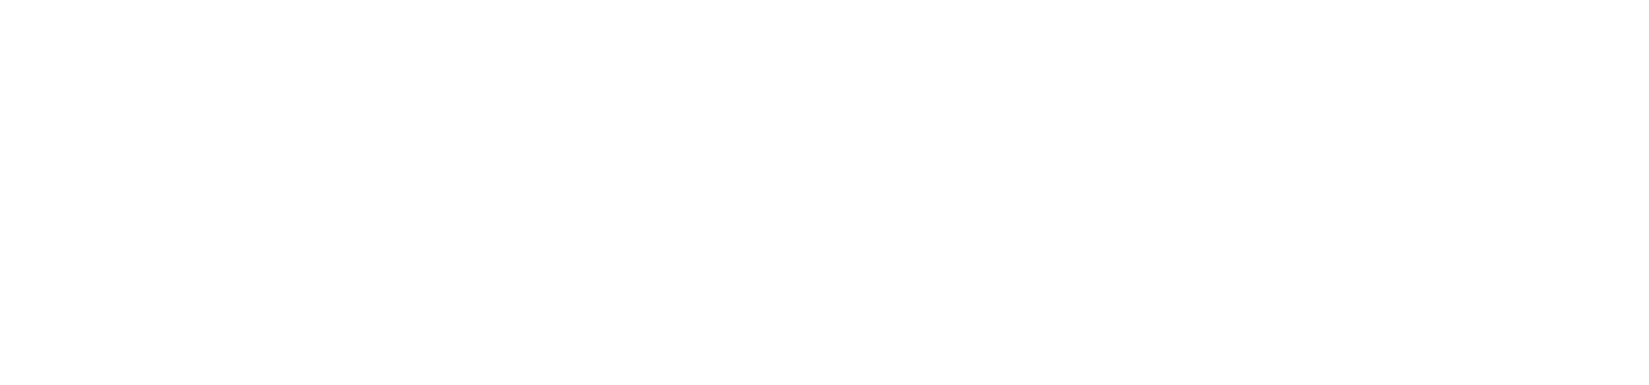 ncw logo